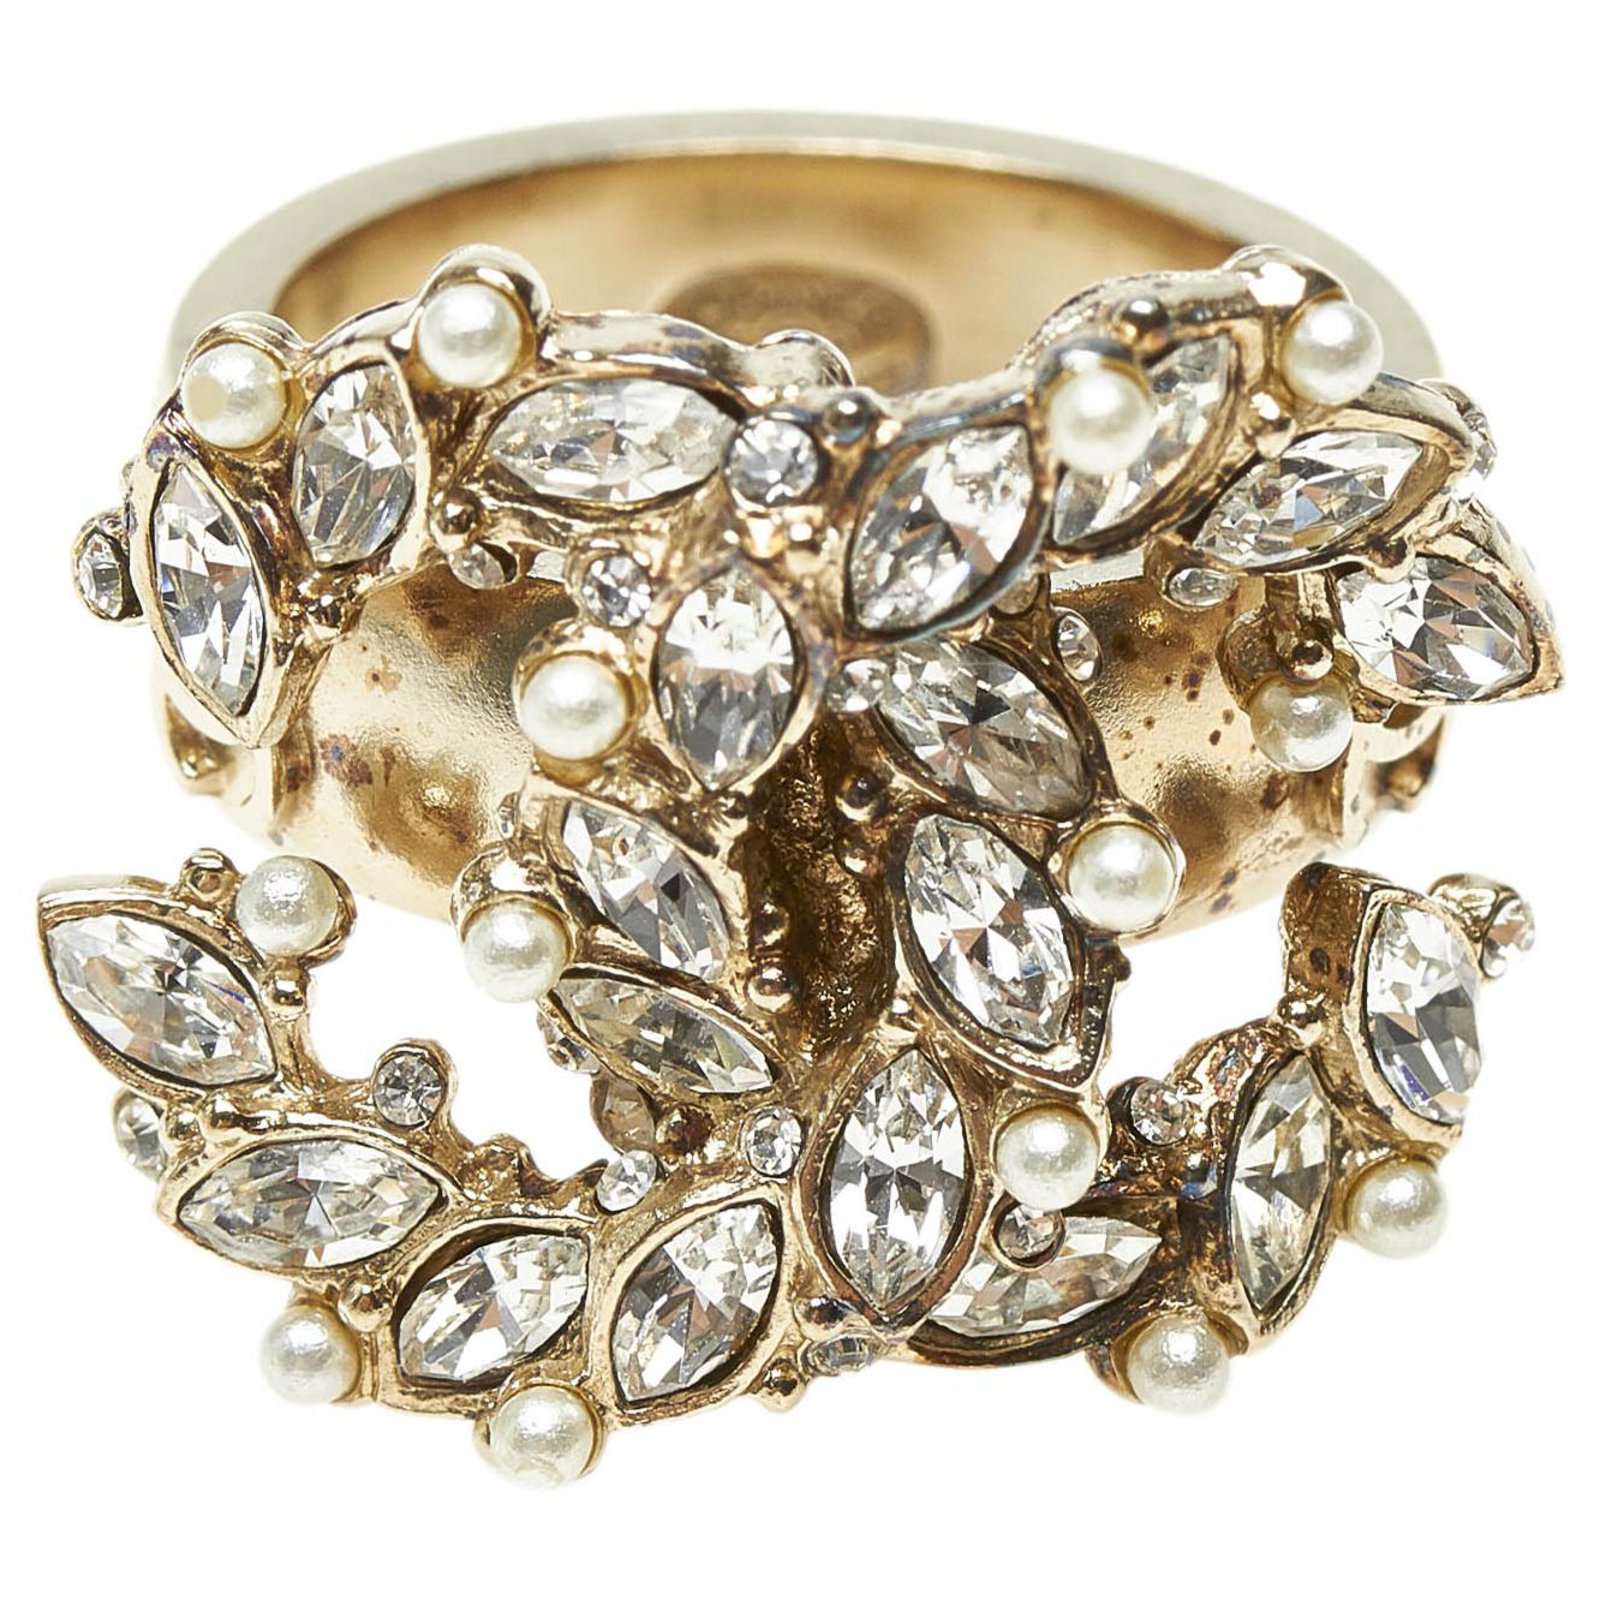 Chanel Silver CC Rhinestone Ring · INTO